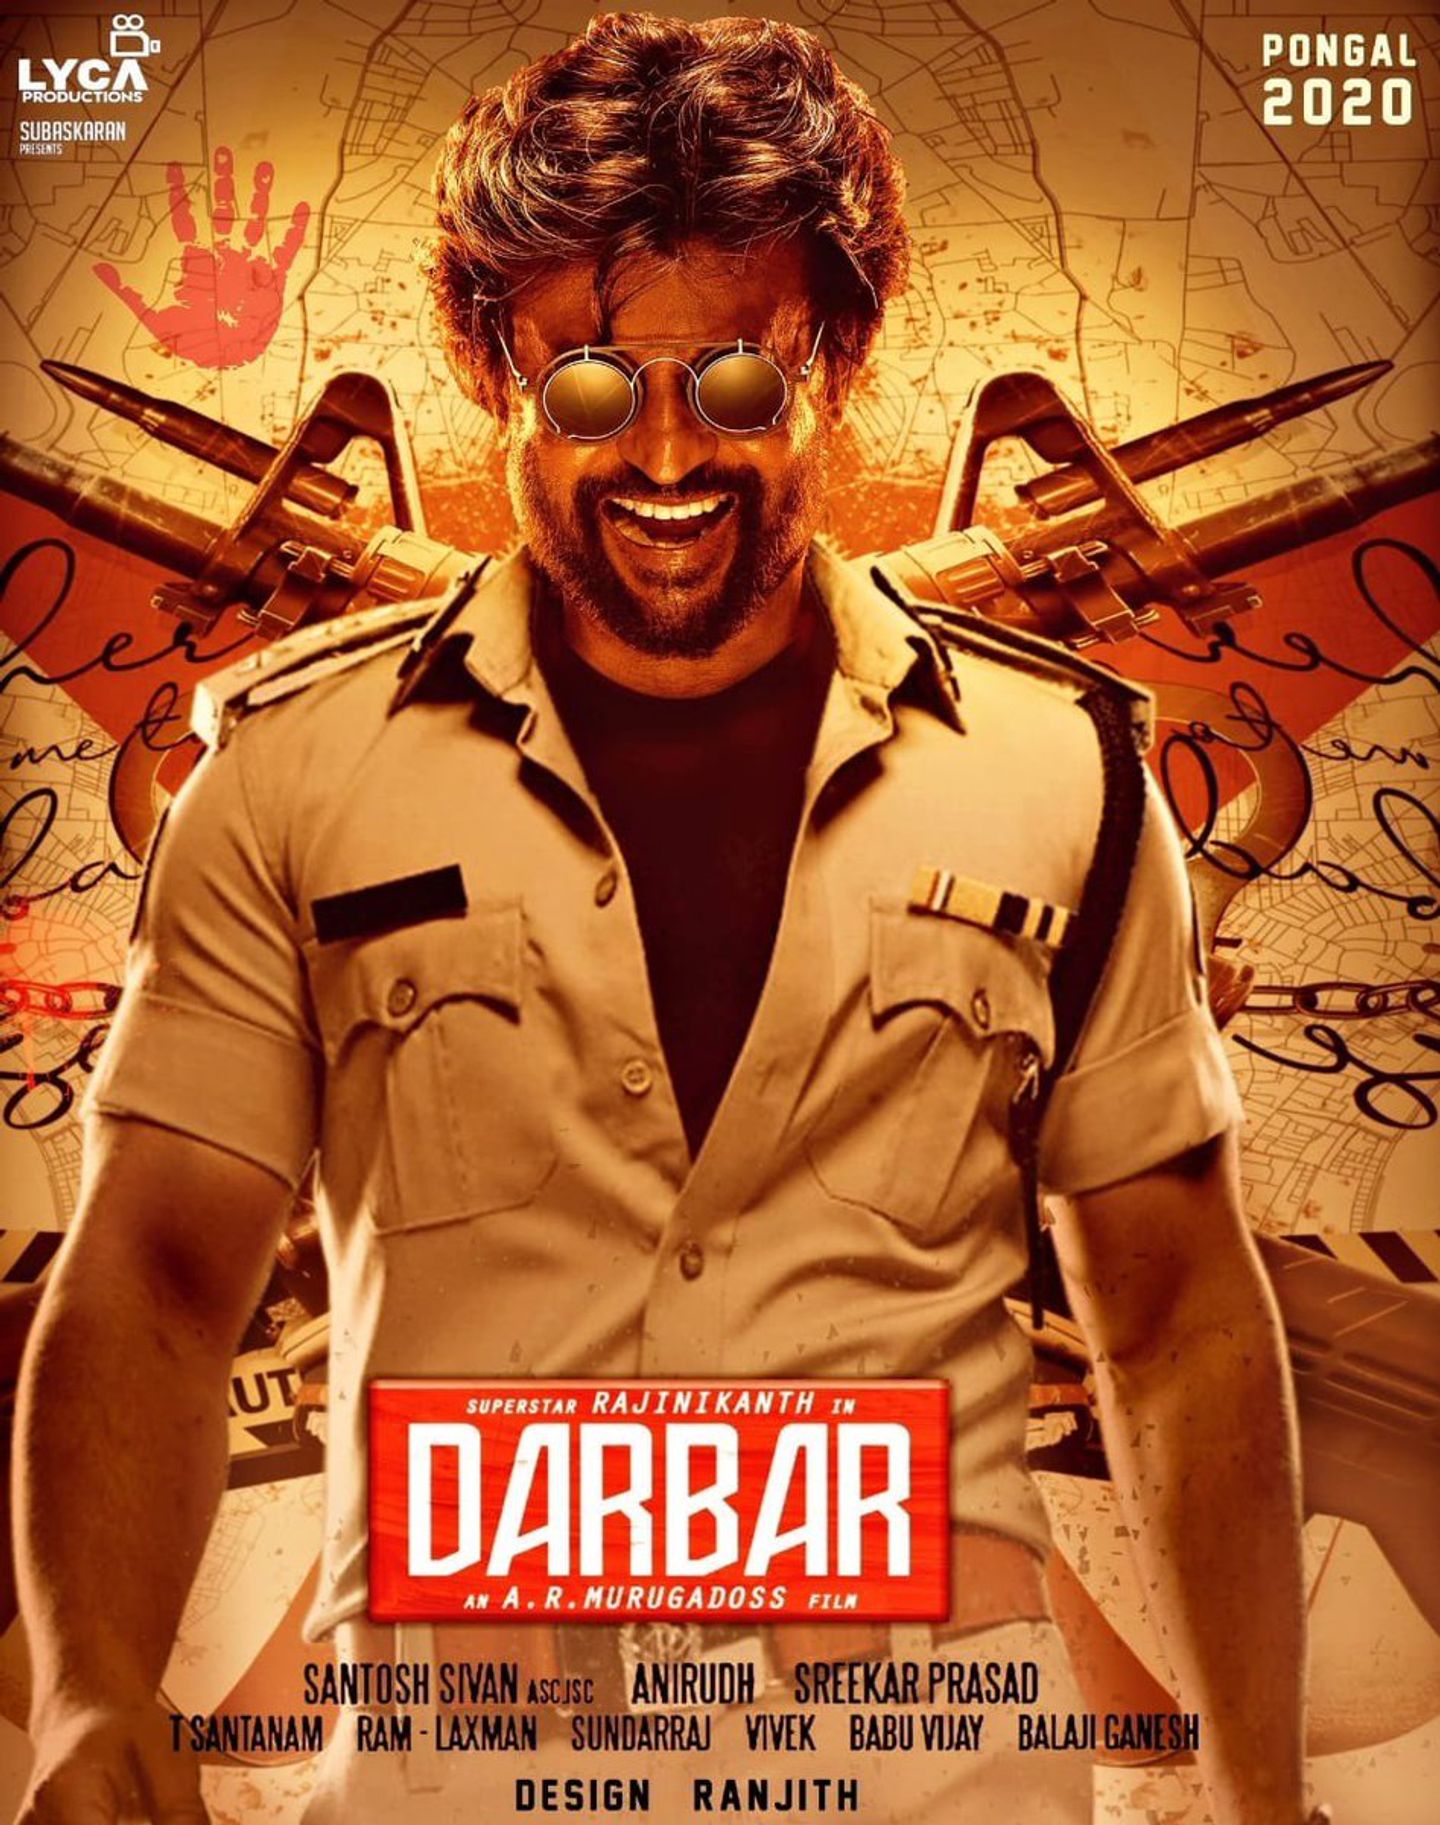 Plakat for 'Darbar - Tamil film'